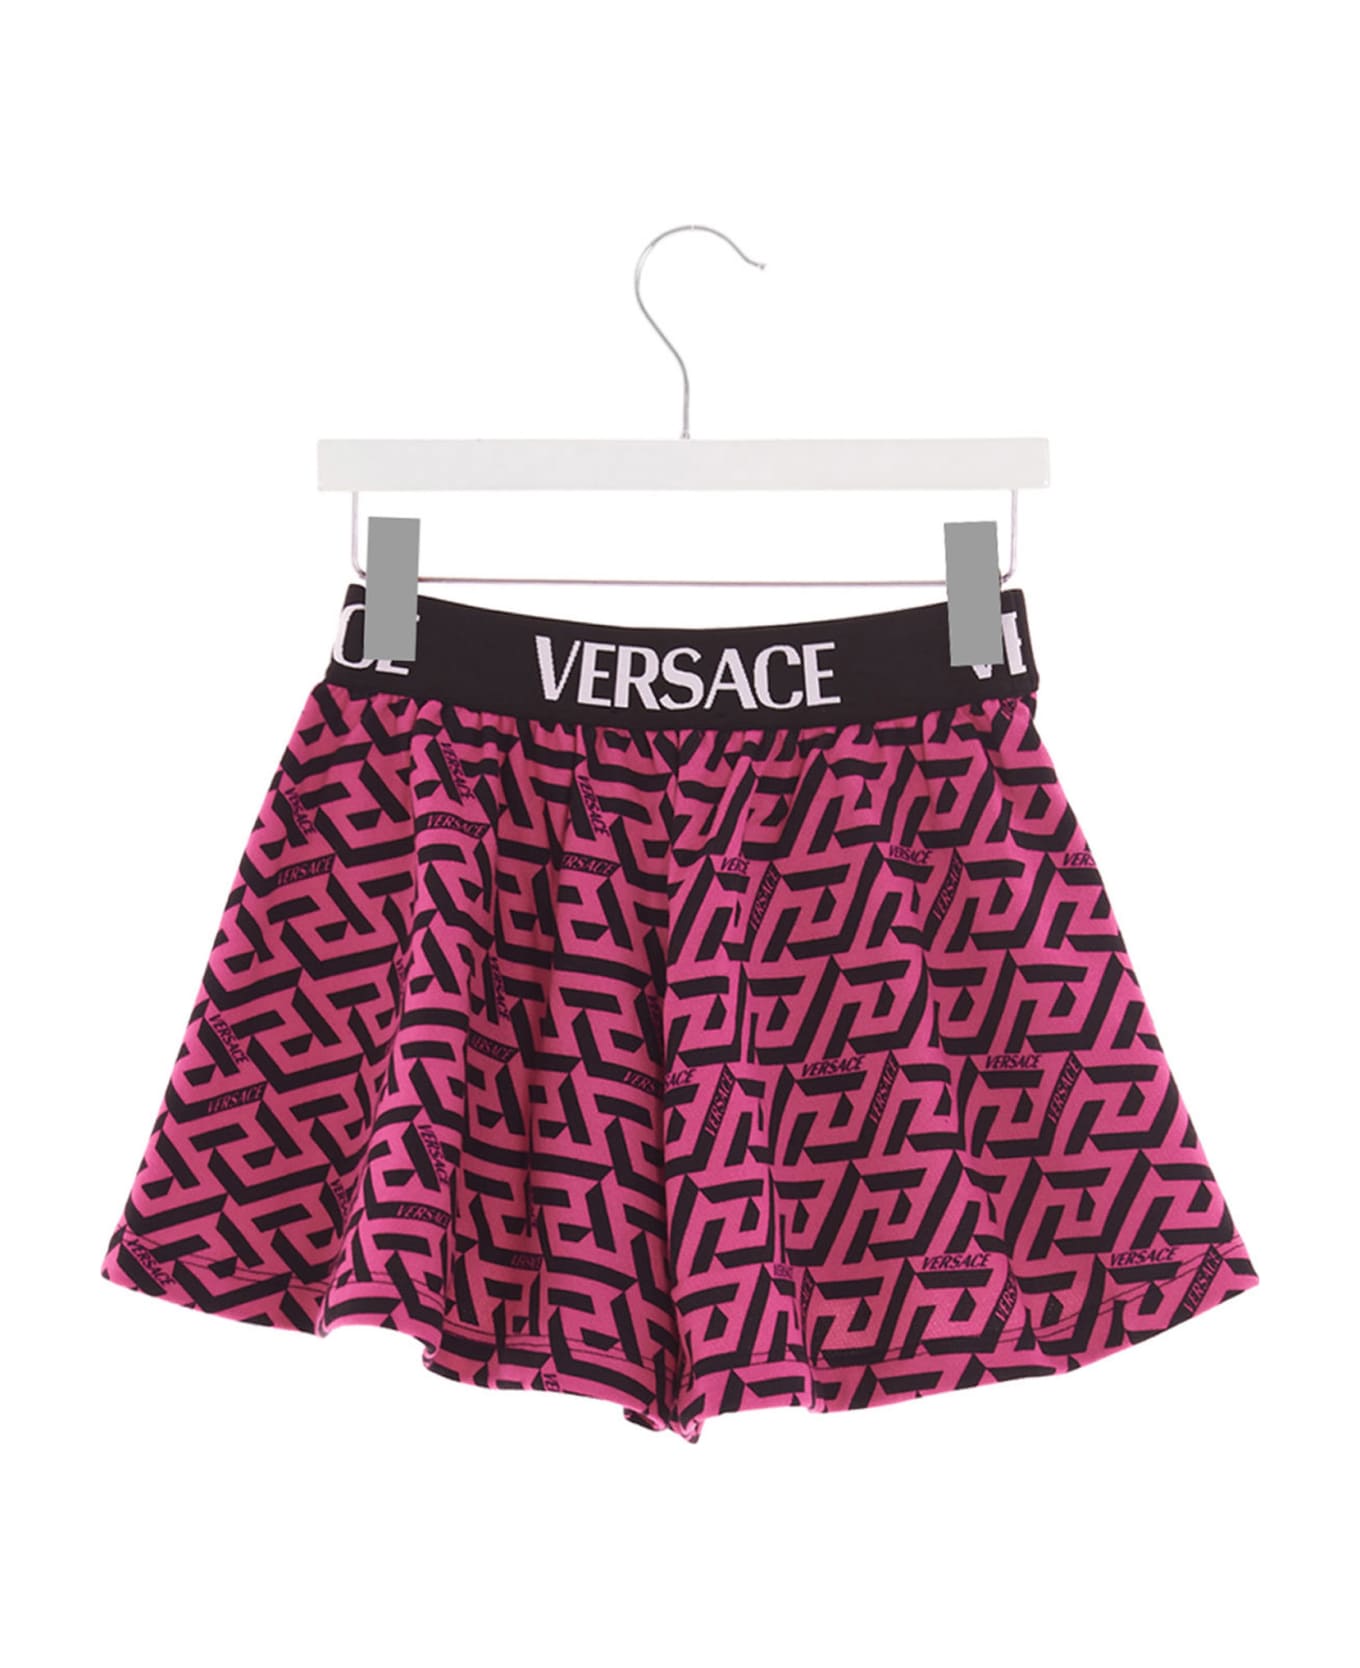 Versace 'la Greca' Shorts - Multicolor